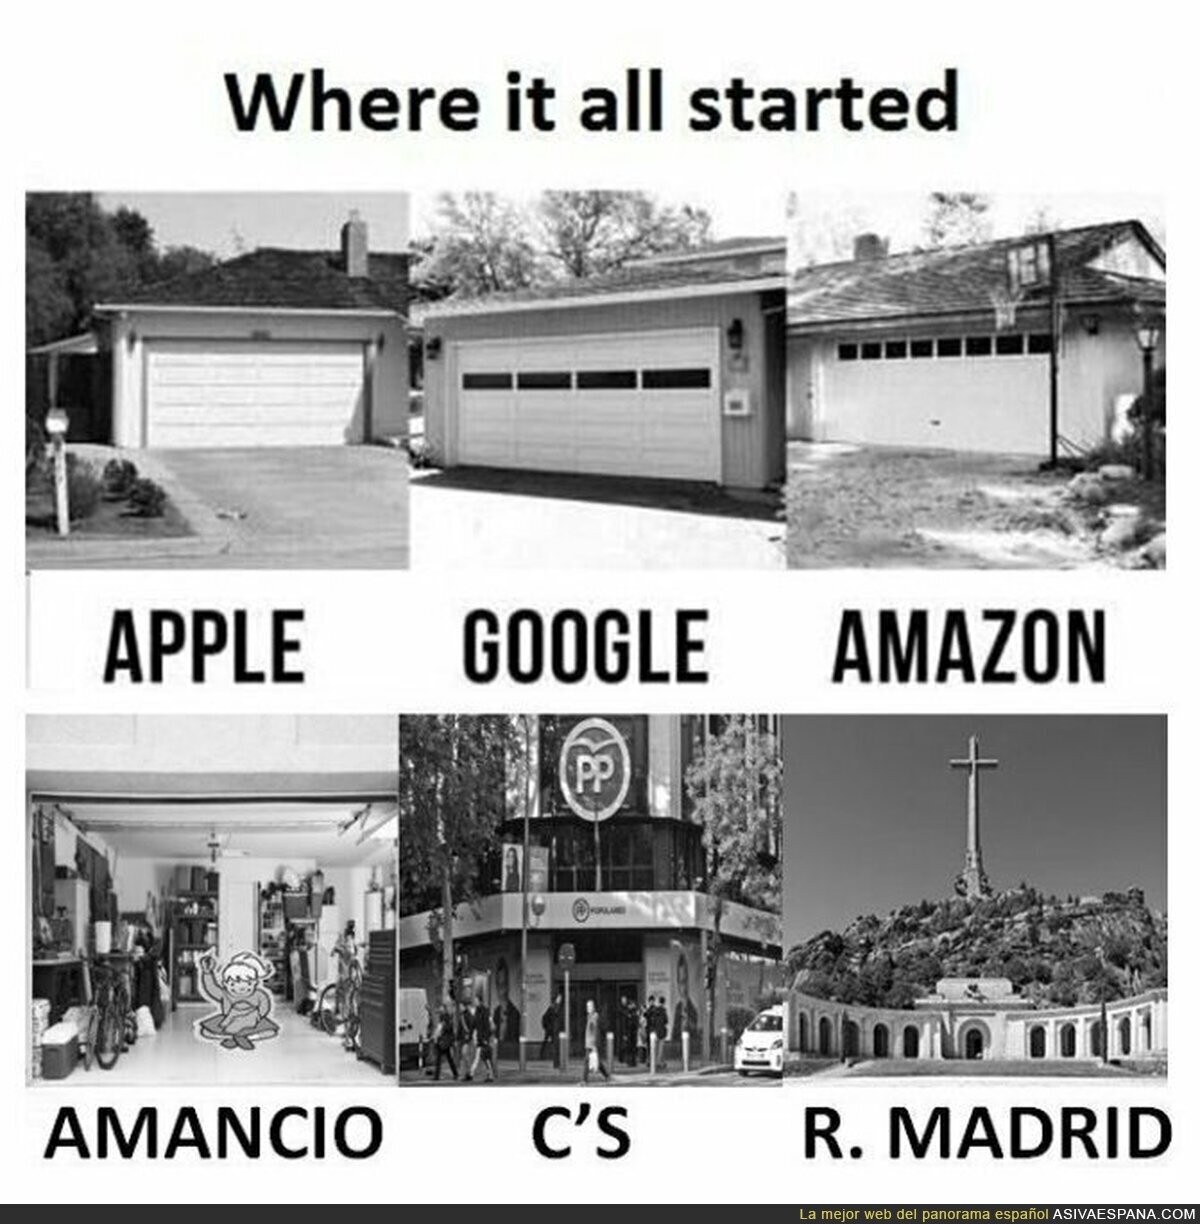 Y aquí empezaron las empresas desde cero